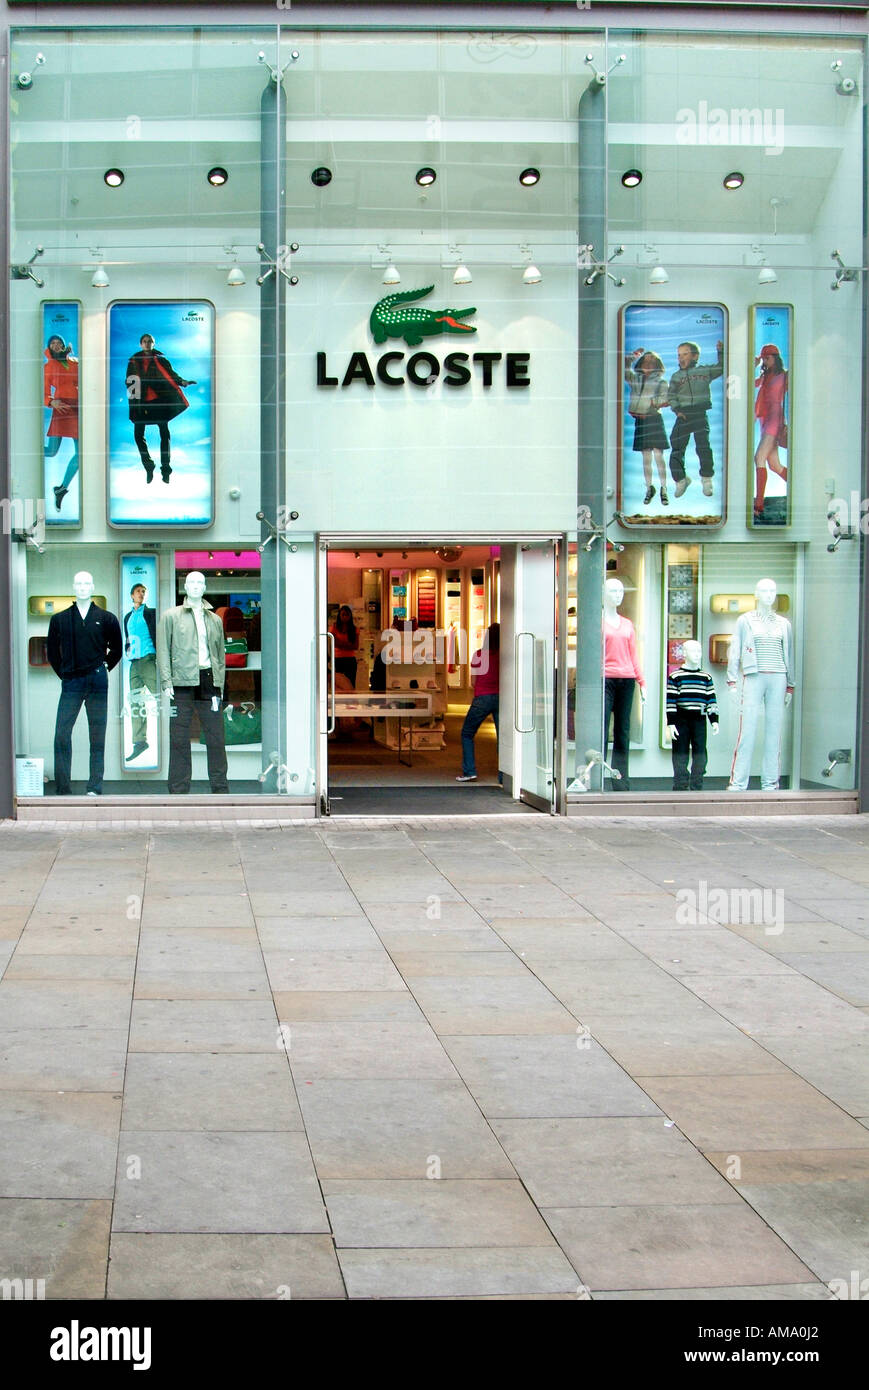 Lacoste shop front Department store 